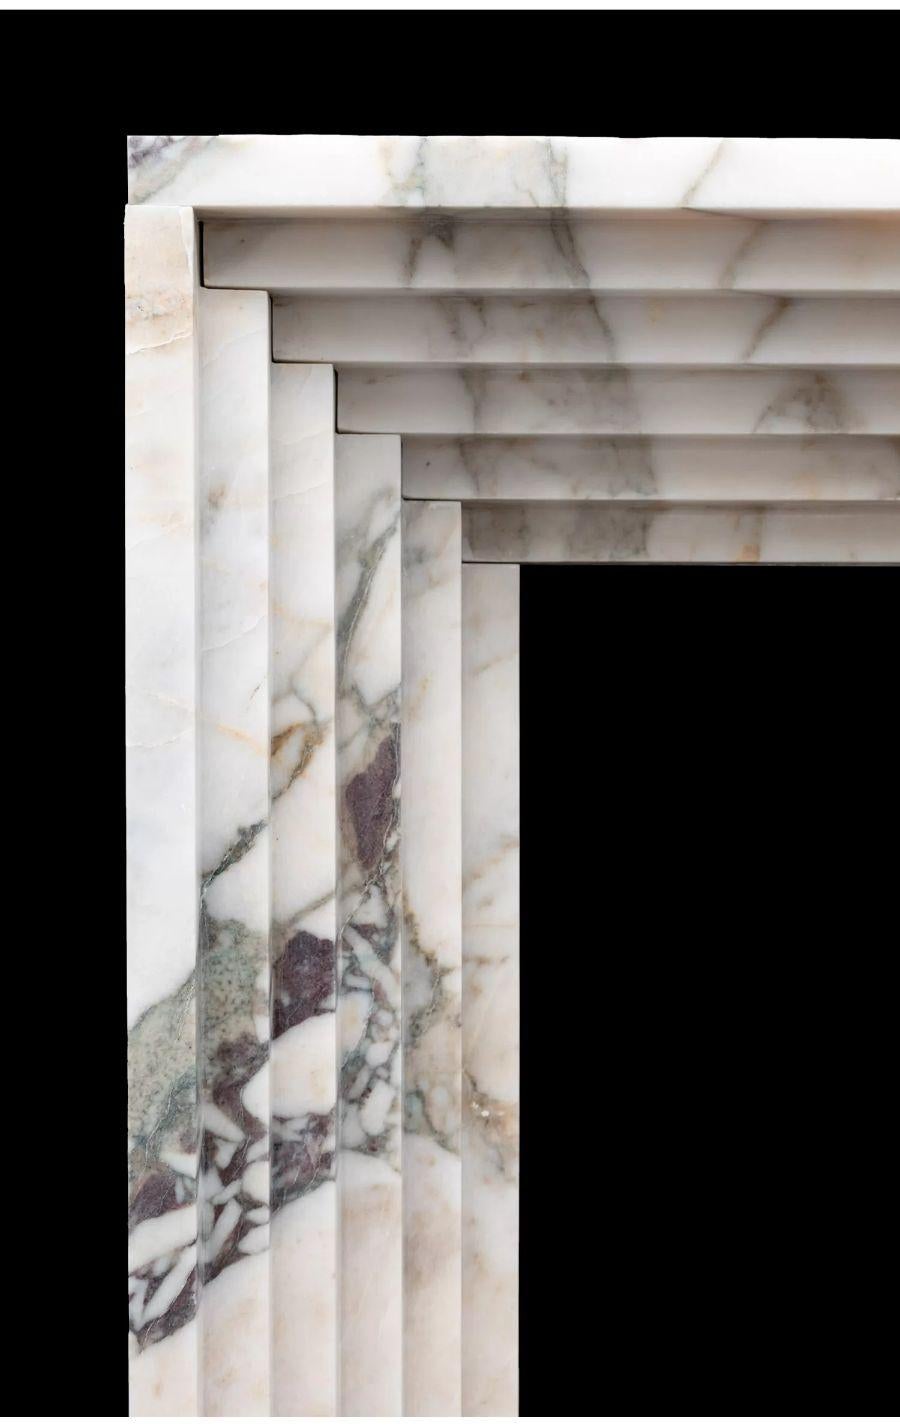 Cheminée en marbre de style Art déco, fabriquée à la main à partir de trois blocs de marbre massifs.

Cette cheminée élégante reflète le style Art déco qui a connu un essor international dans les années 1930 et 1940.

Cette cheminée peut être